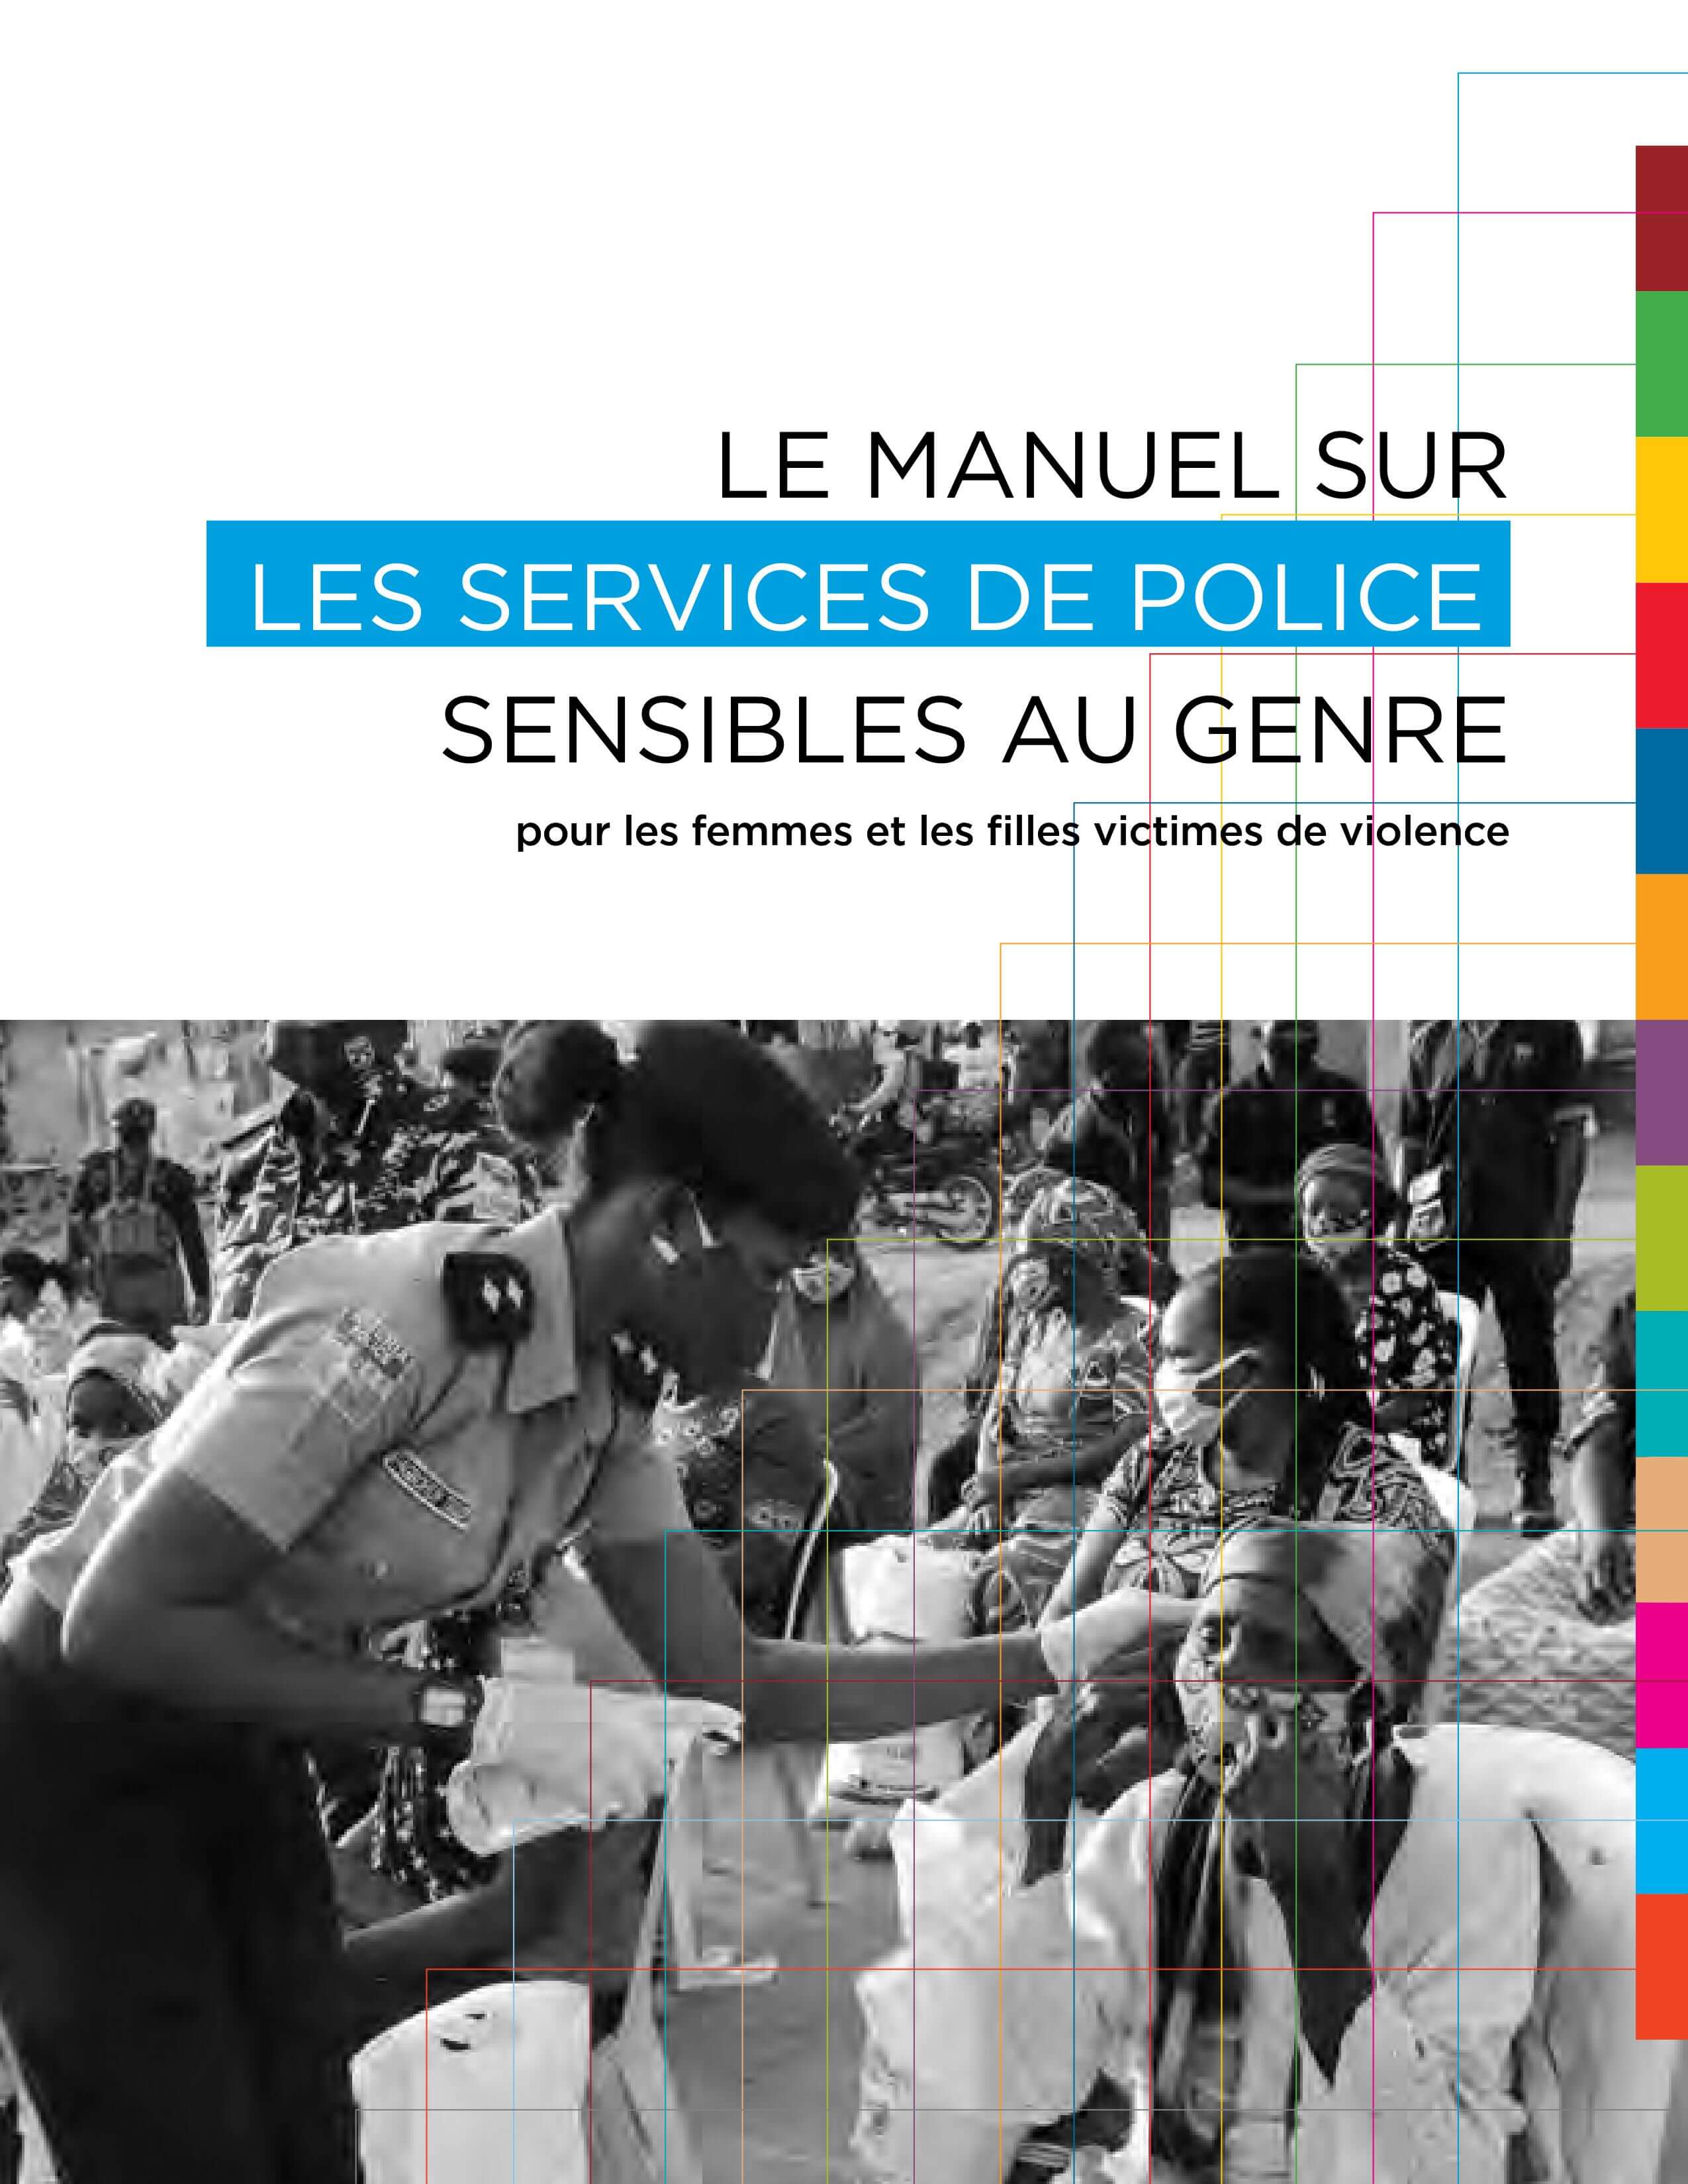 Le manuel sur les services de police sensibles au genre pour les femmes et les filles victimes de violences